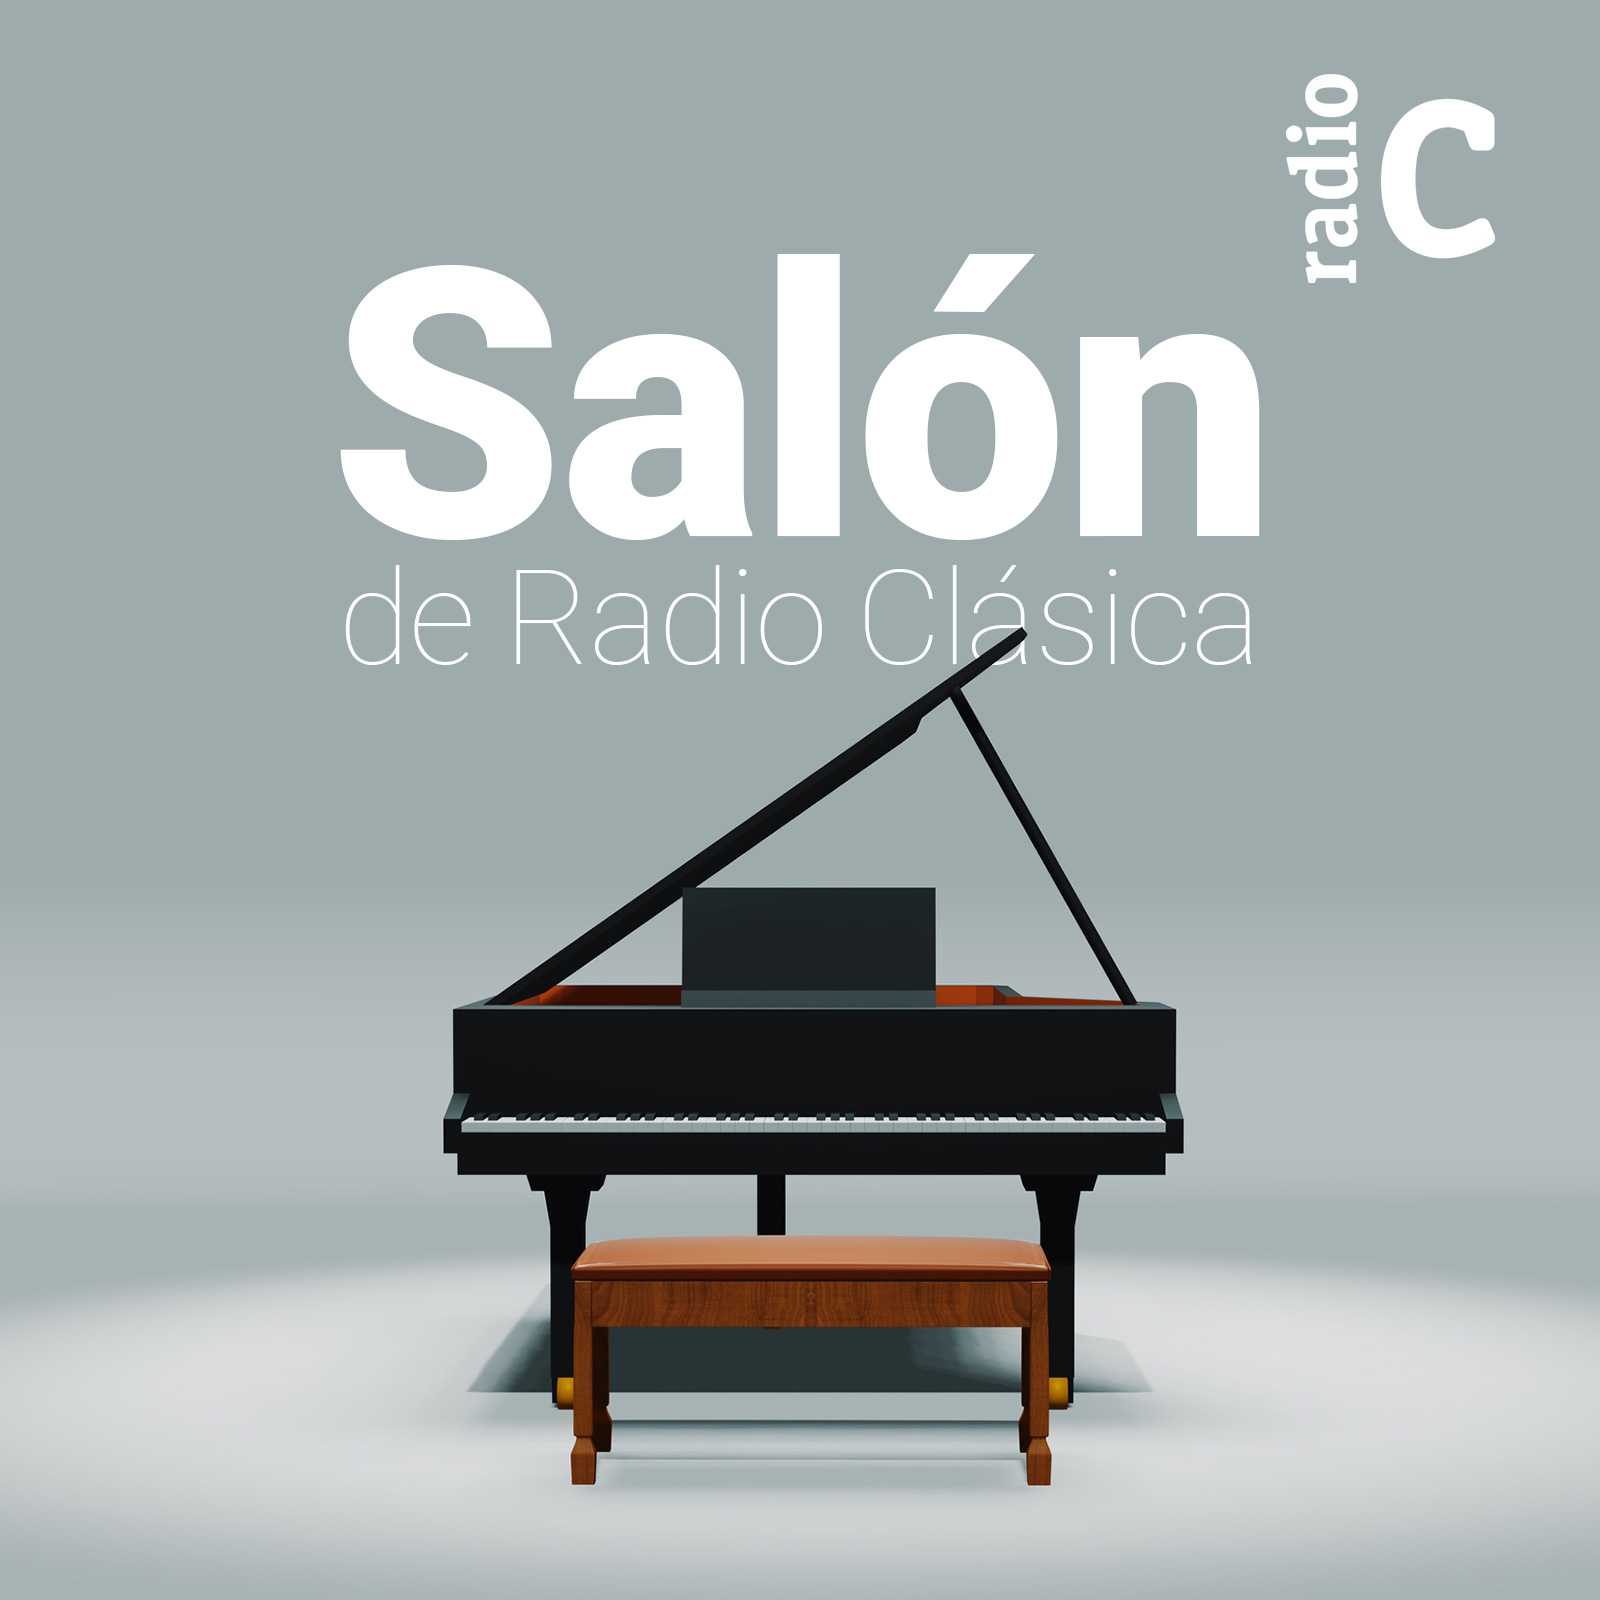 El salón de Radio Clásica - 05/08/14